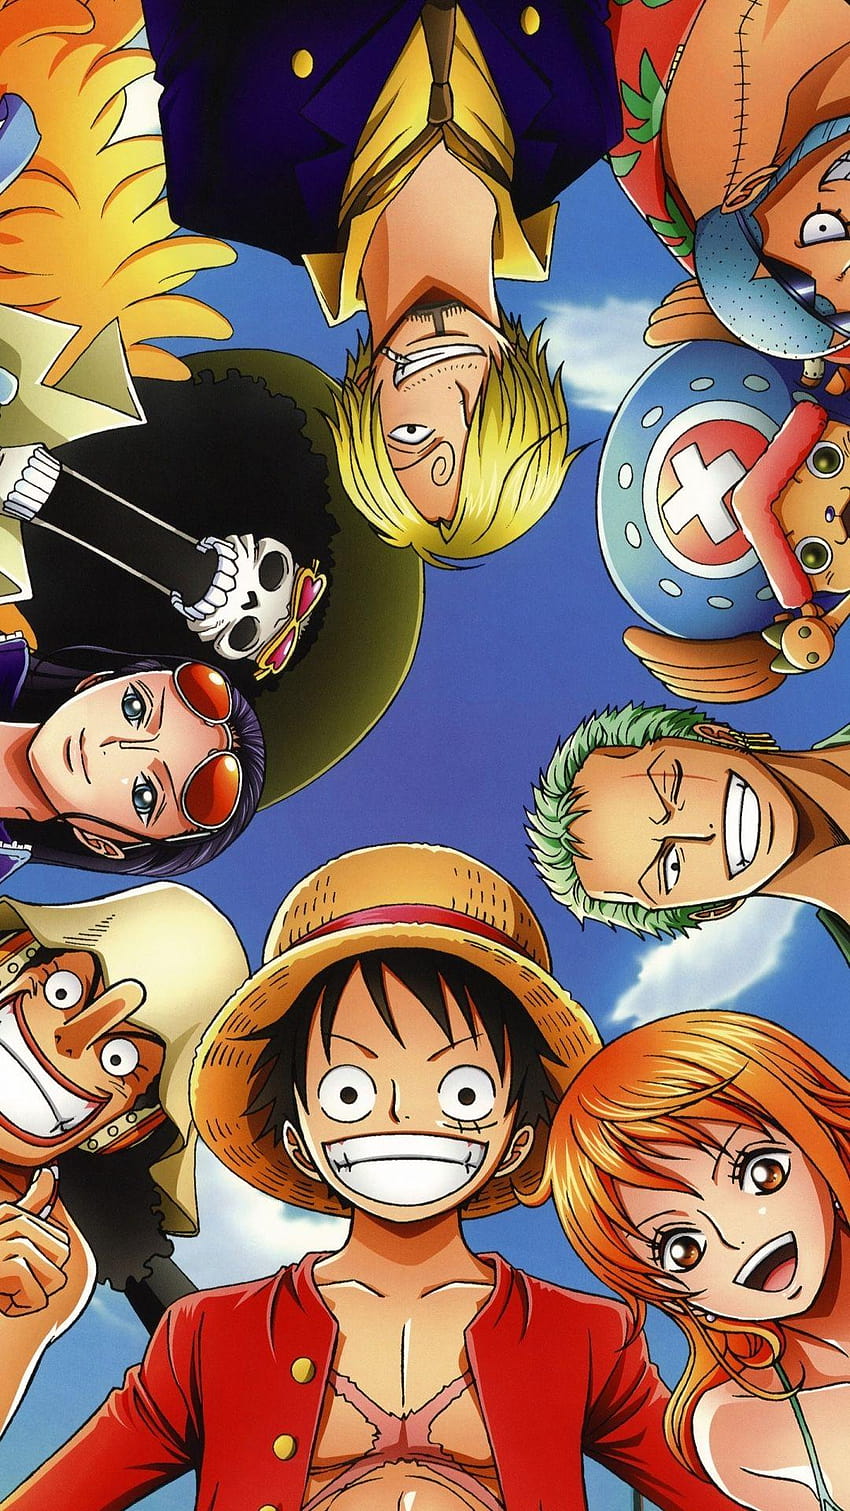 One Piece iPhone wallpaper là sự lựa chọn hoàn hảo cho màn hình điện thoại của bạn. Bạn có thể trang trí điện thoại của mình với hình ảnh chất lượng cao của băng hải tặc Mugiwara và những nhân vật yêu thích. Trong bộ sưu tập này, bạn sẽ tìm thấy những hình ảnh độc đáo và rực rỡ, đem lại cho bạn trải nghiệm sống động nhất của One Piece.